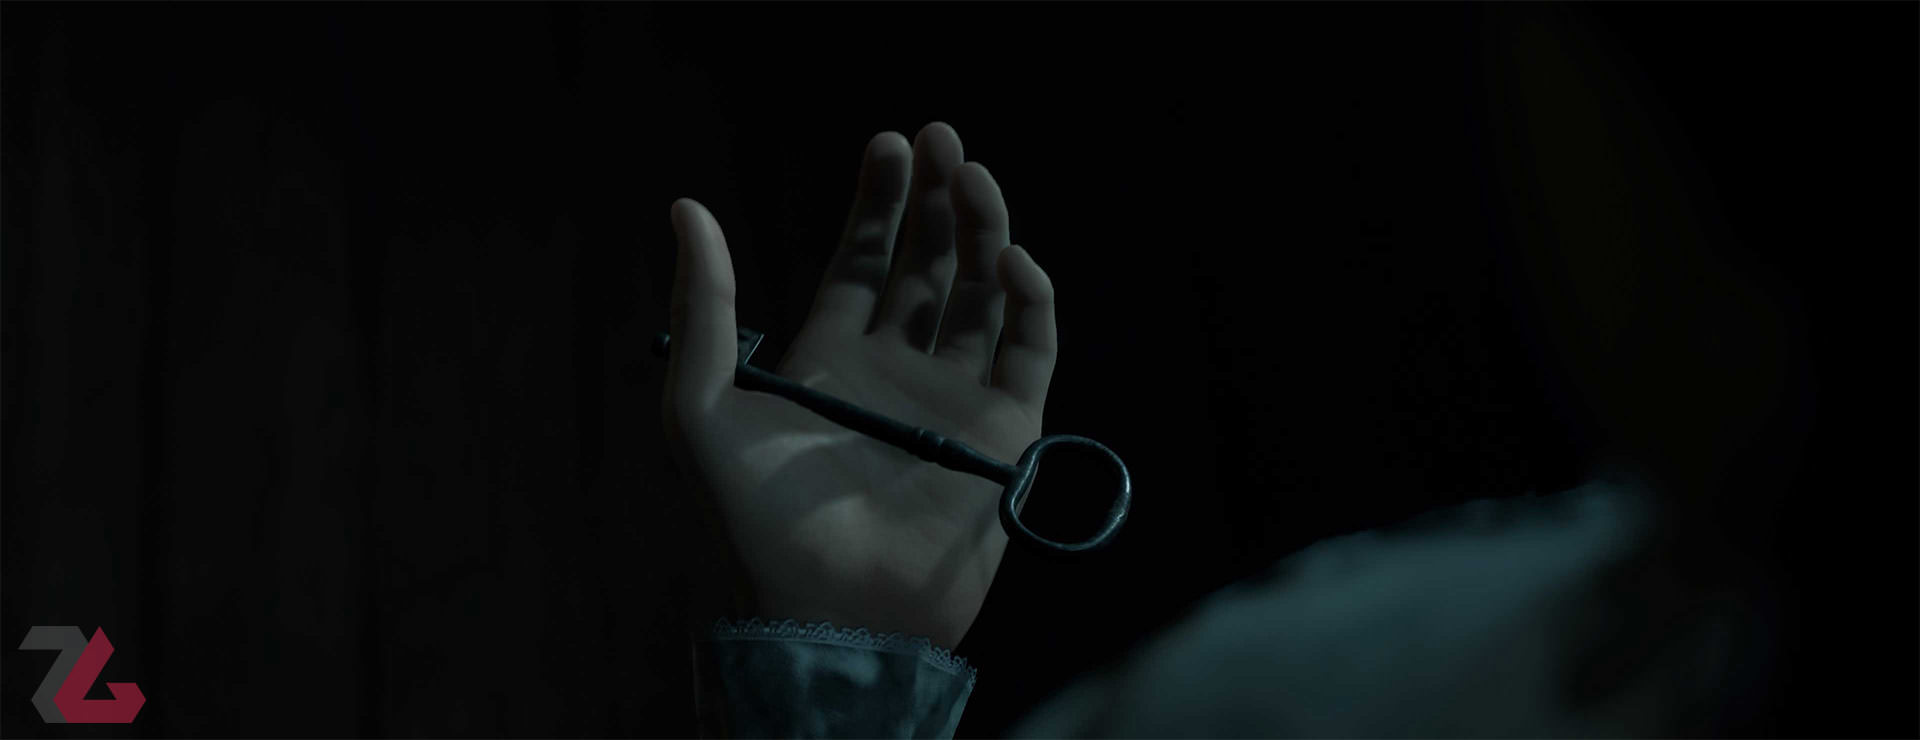 کلید در دست یک انسان بازی ترسناک Dark Pictures